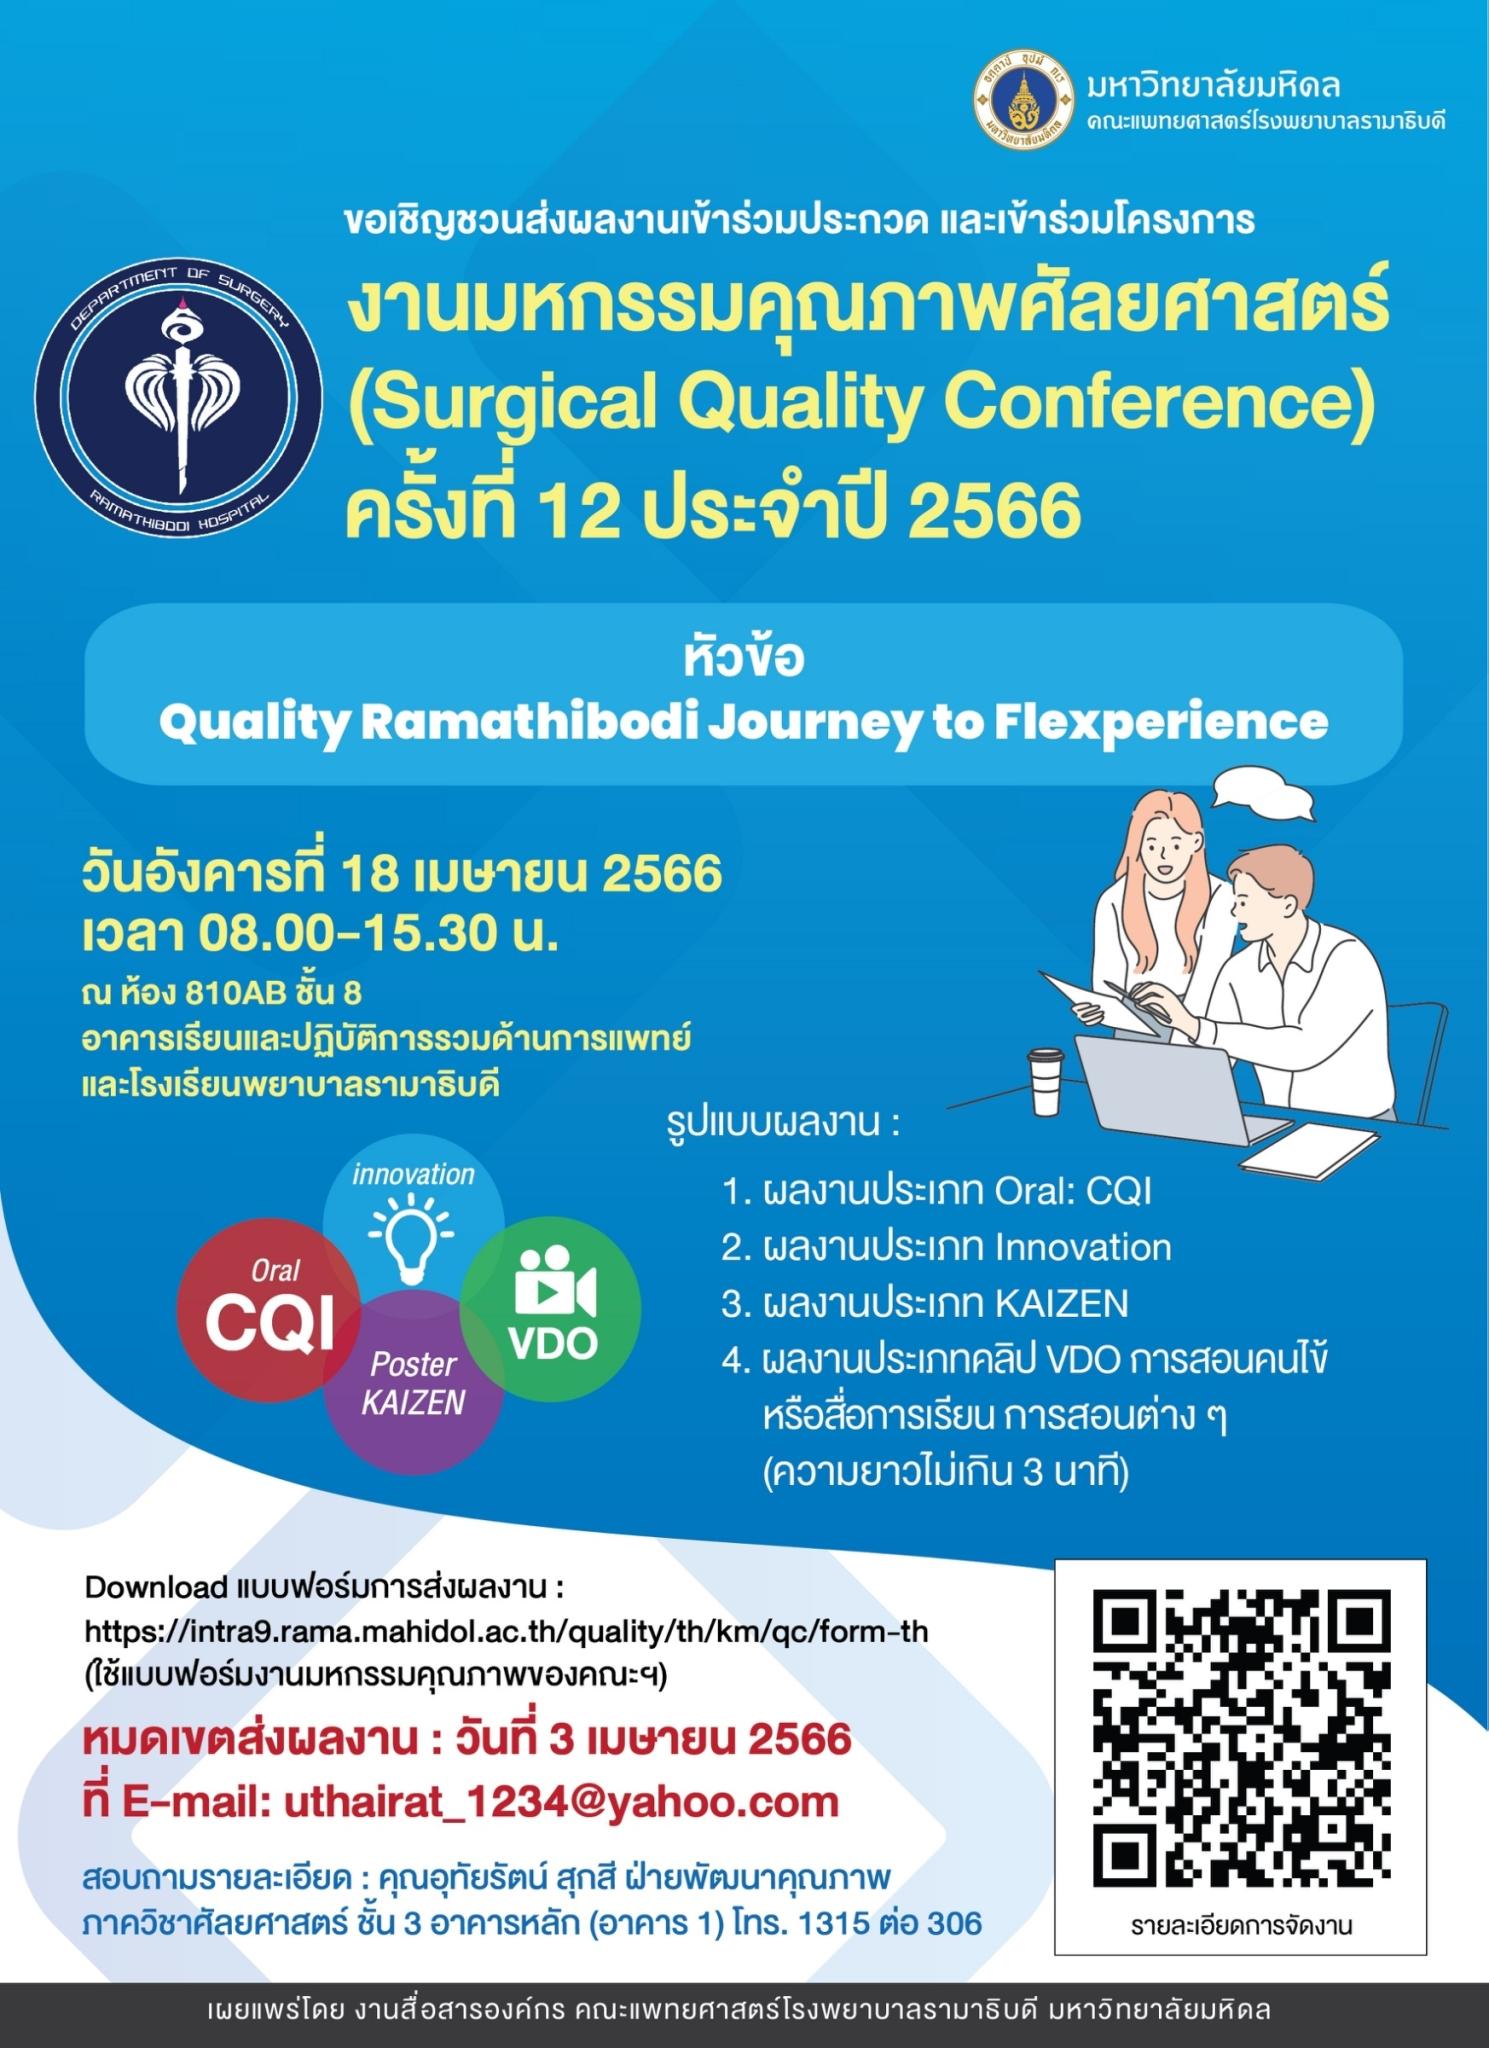 งานมหกรรมคุณภาพศัลยศาสตร์ (Surgical Quality Conference) ครั้งที่ 12 ประจำปี 2566